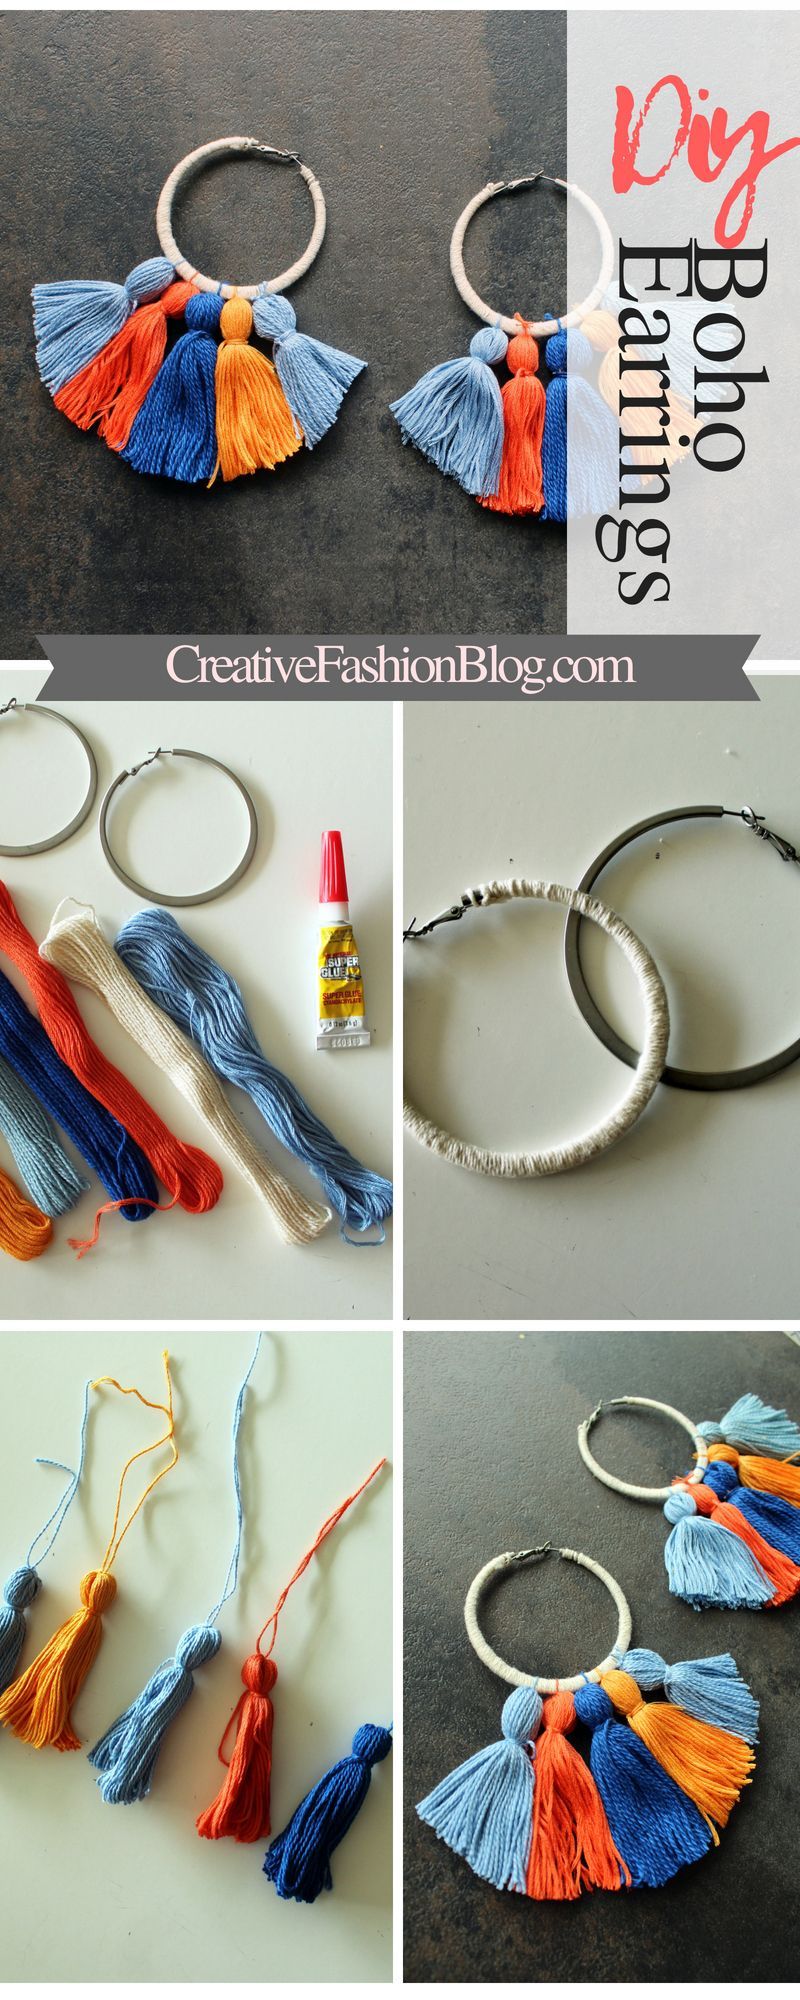 How To Make Easy DIY Boho Tassel Earrings - Creative Fashion Blog - How To Make Easy DIY Boho Tassel Earrings - Creative Fashion Blog -   18 diy Easy jewelry ideas